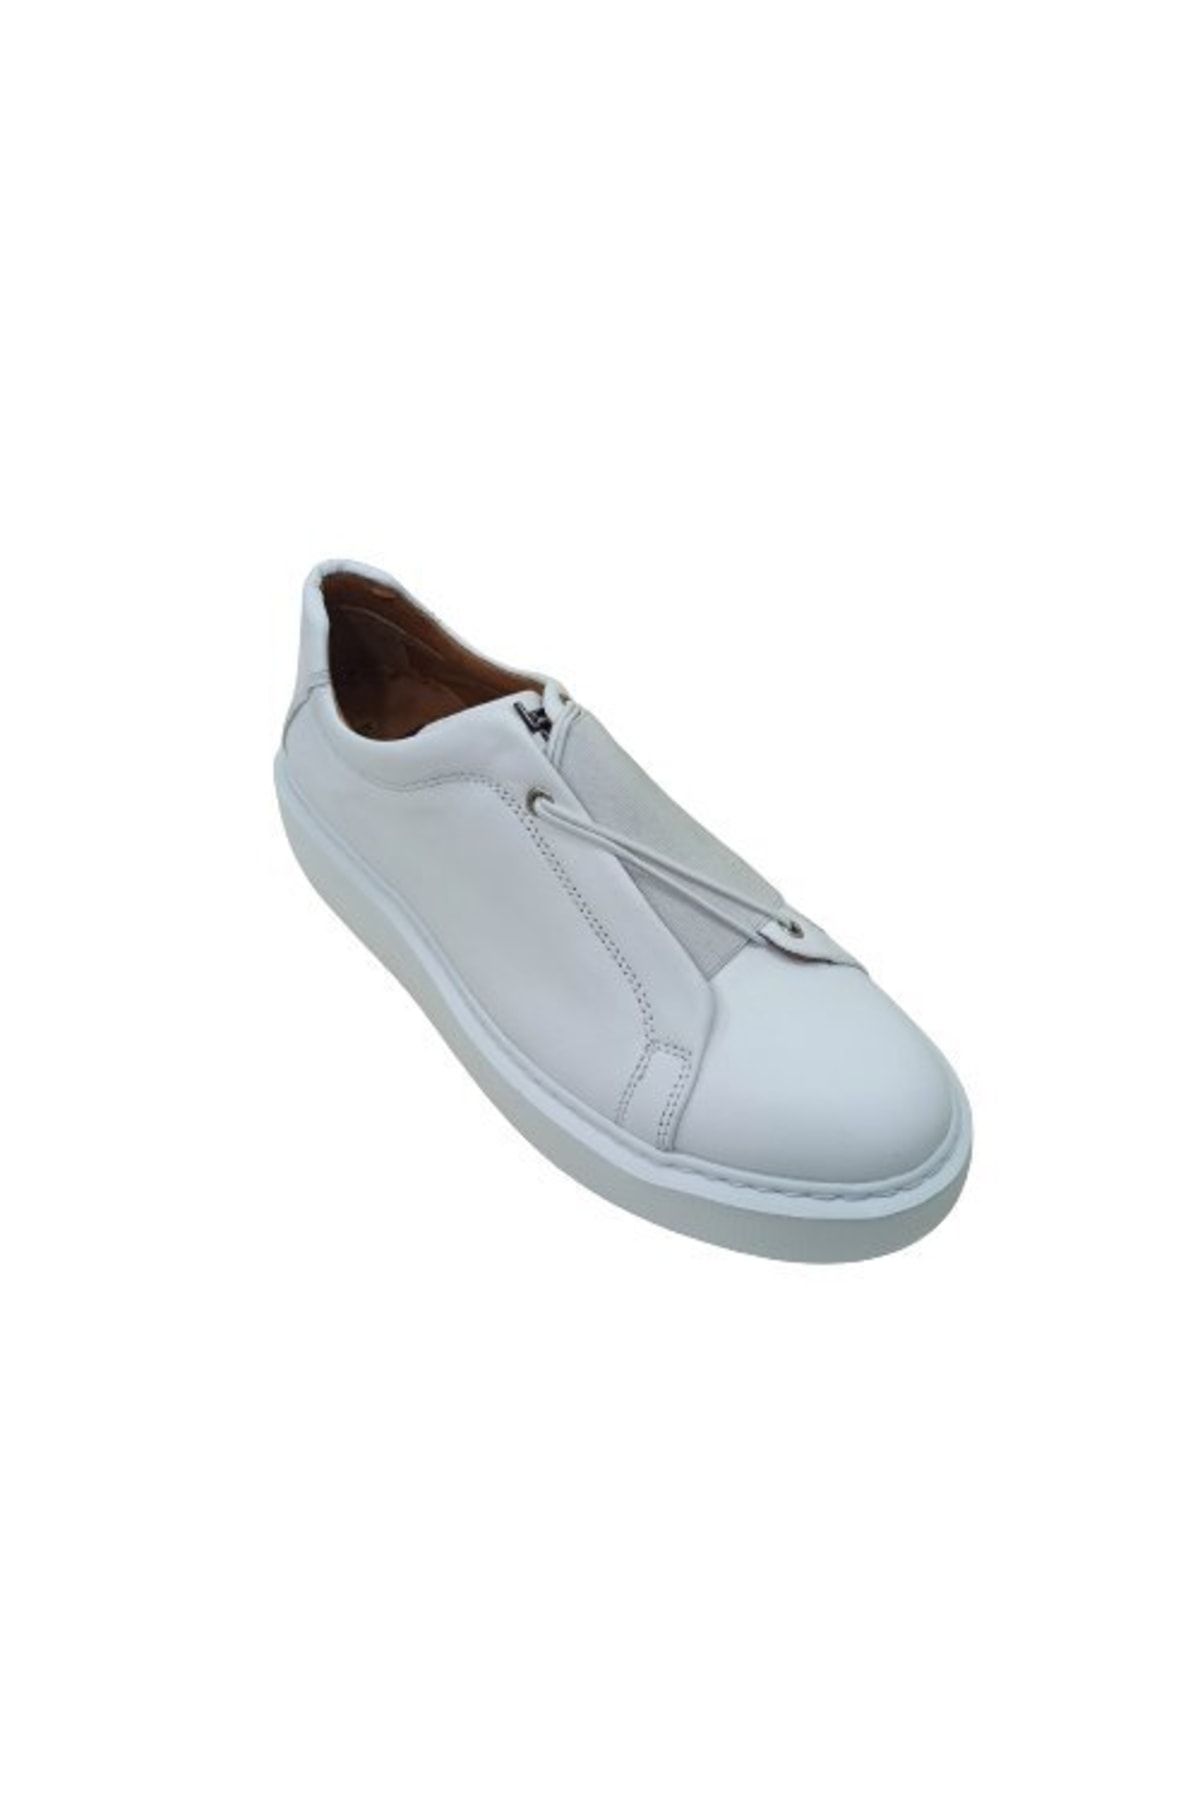 LUCIANO BELLINI Beyaz Deri Erkek Casual Ayakkabı